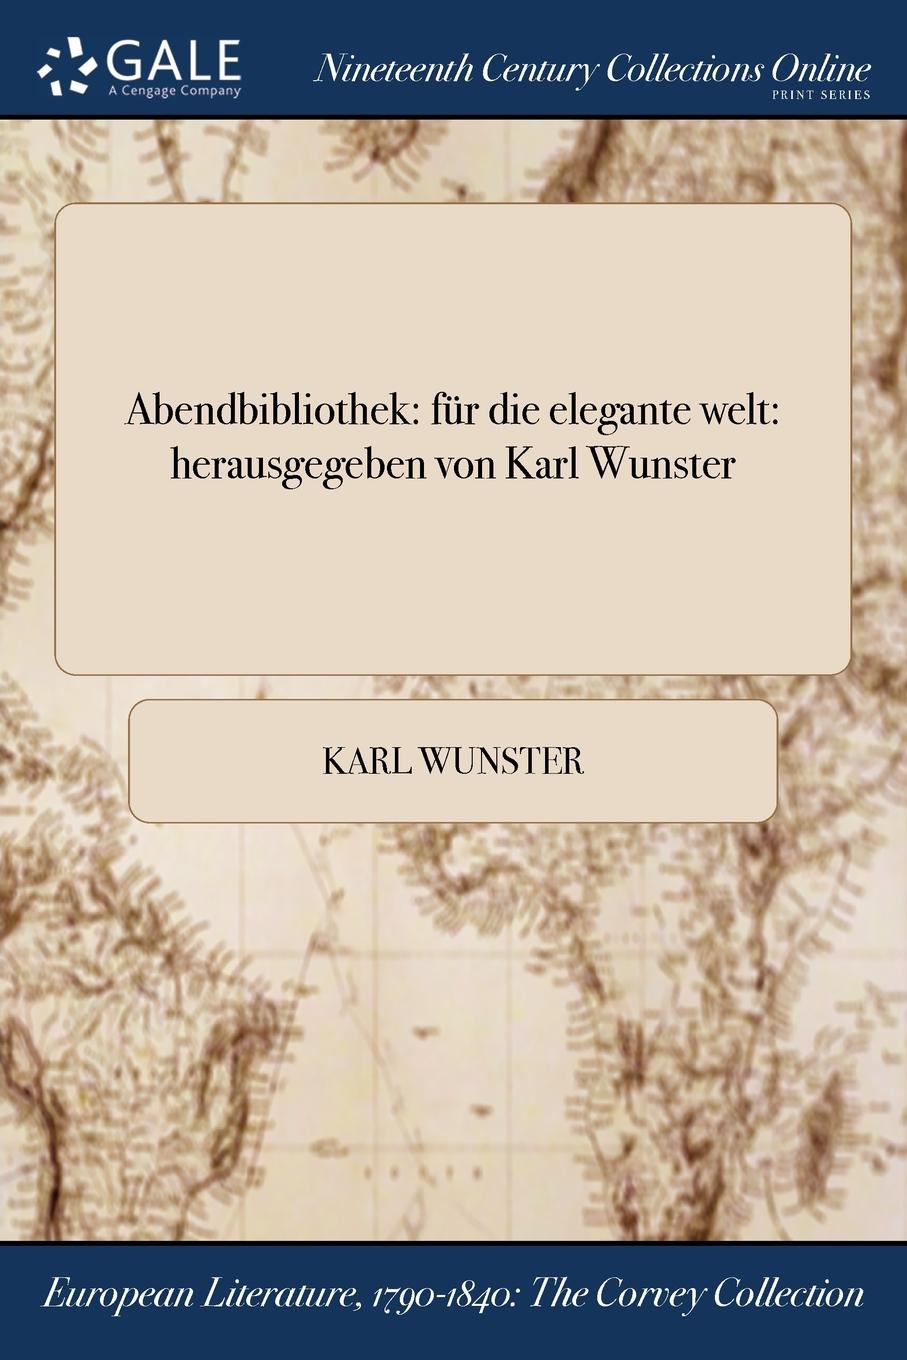 Karl Wunster Abendbibliothek. fur die elegante welt: herausgegeben von Karl Wunster